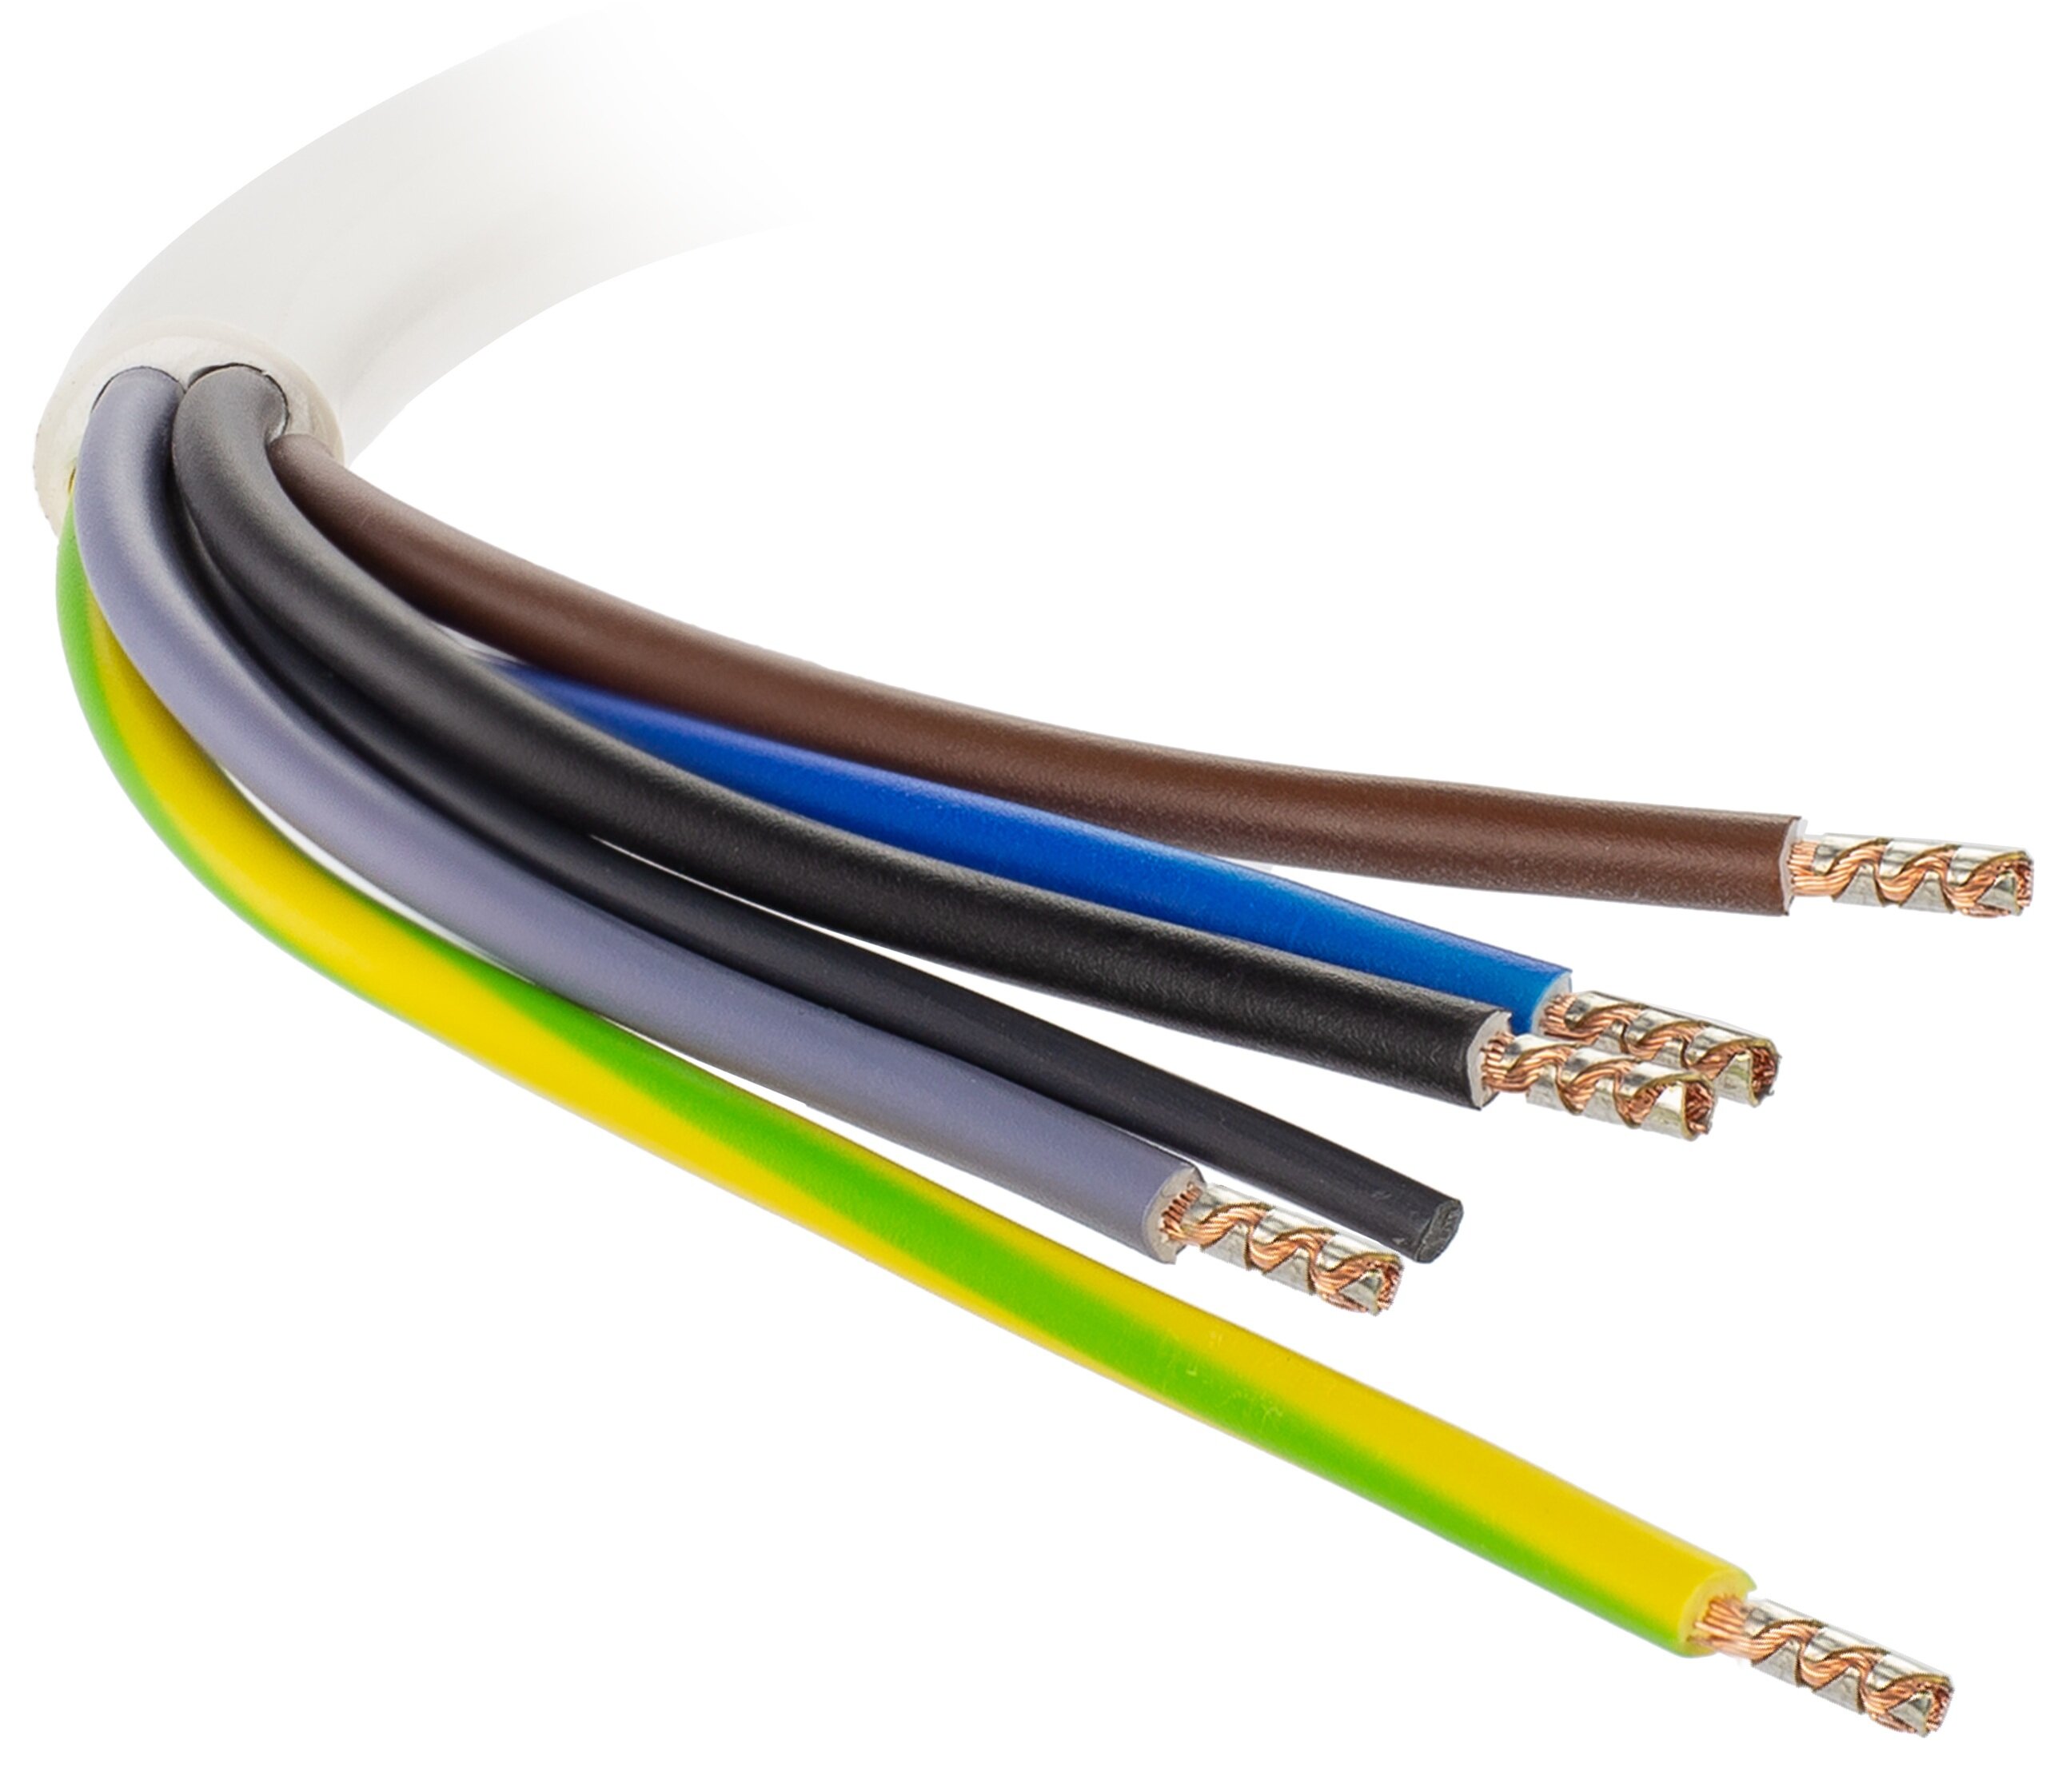 SPEC do podłączenia płyt 1.5 m Kabel - niskie ceny i opinie w Media Expert